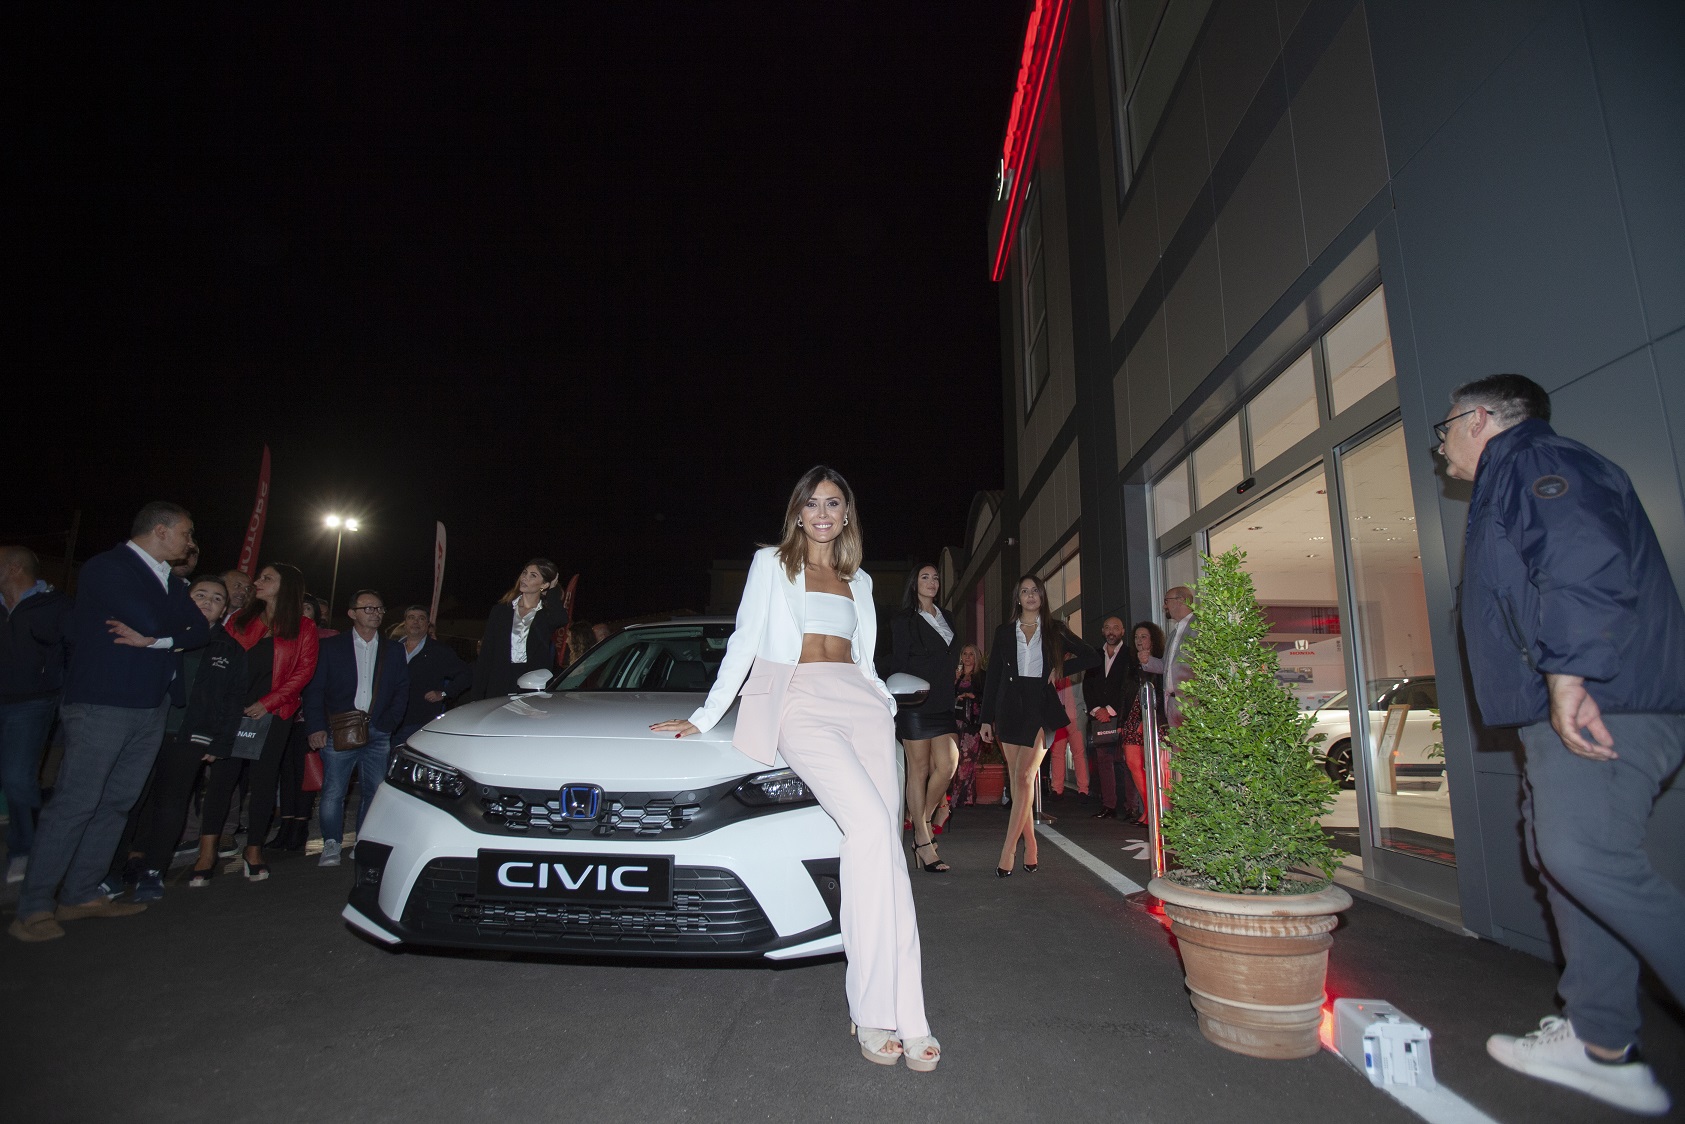 Foto 2 - D.Car Motors: il successo dell'inaugurazione